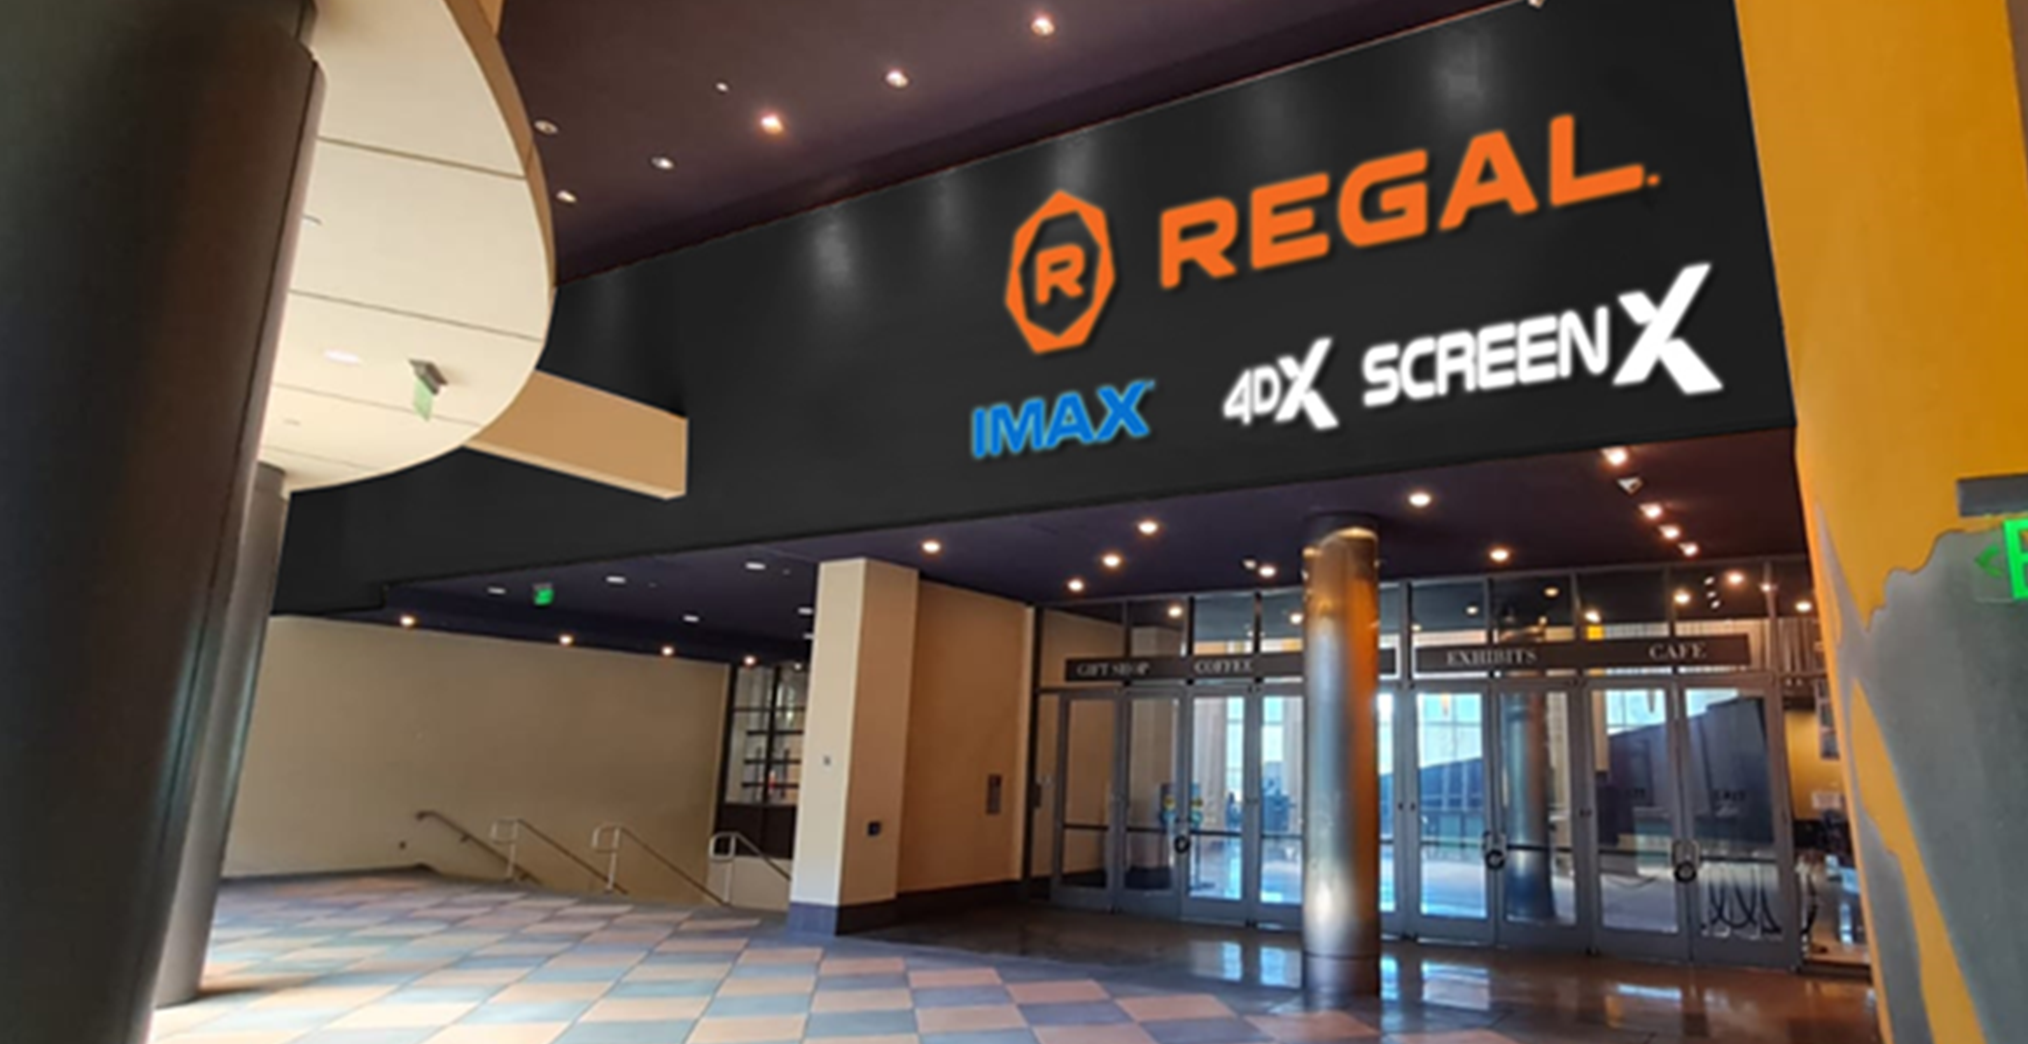 Regal Cinema at Sherman Oaks Galleria